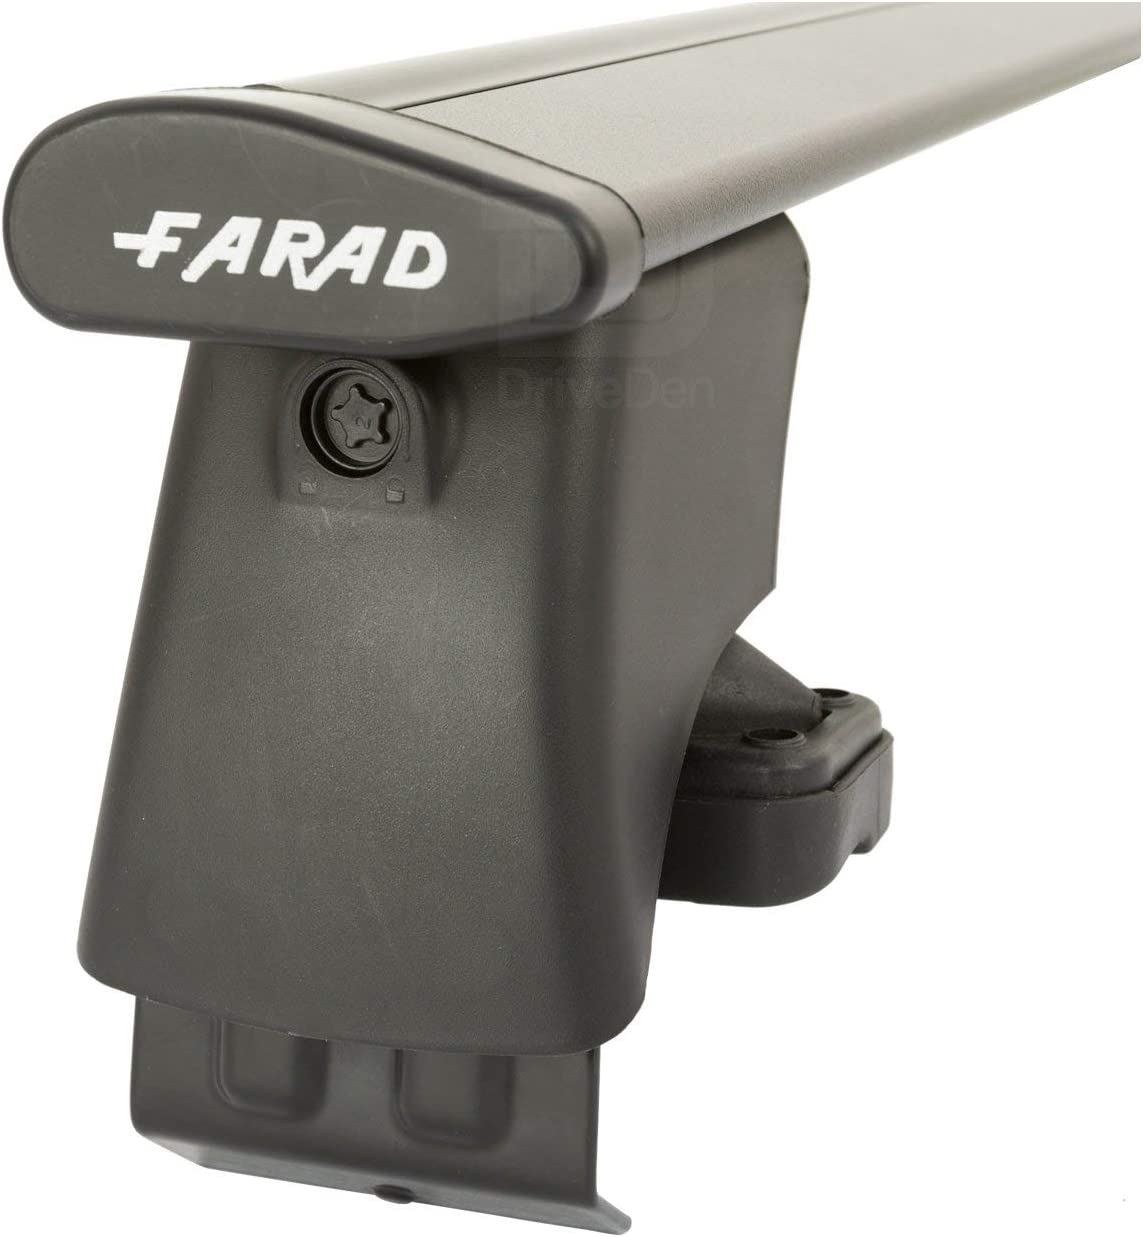 FARAD-Kit H2 per barre portatutto - Peugeot 206 1998-2008 (senza corrimano)